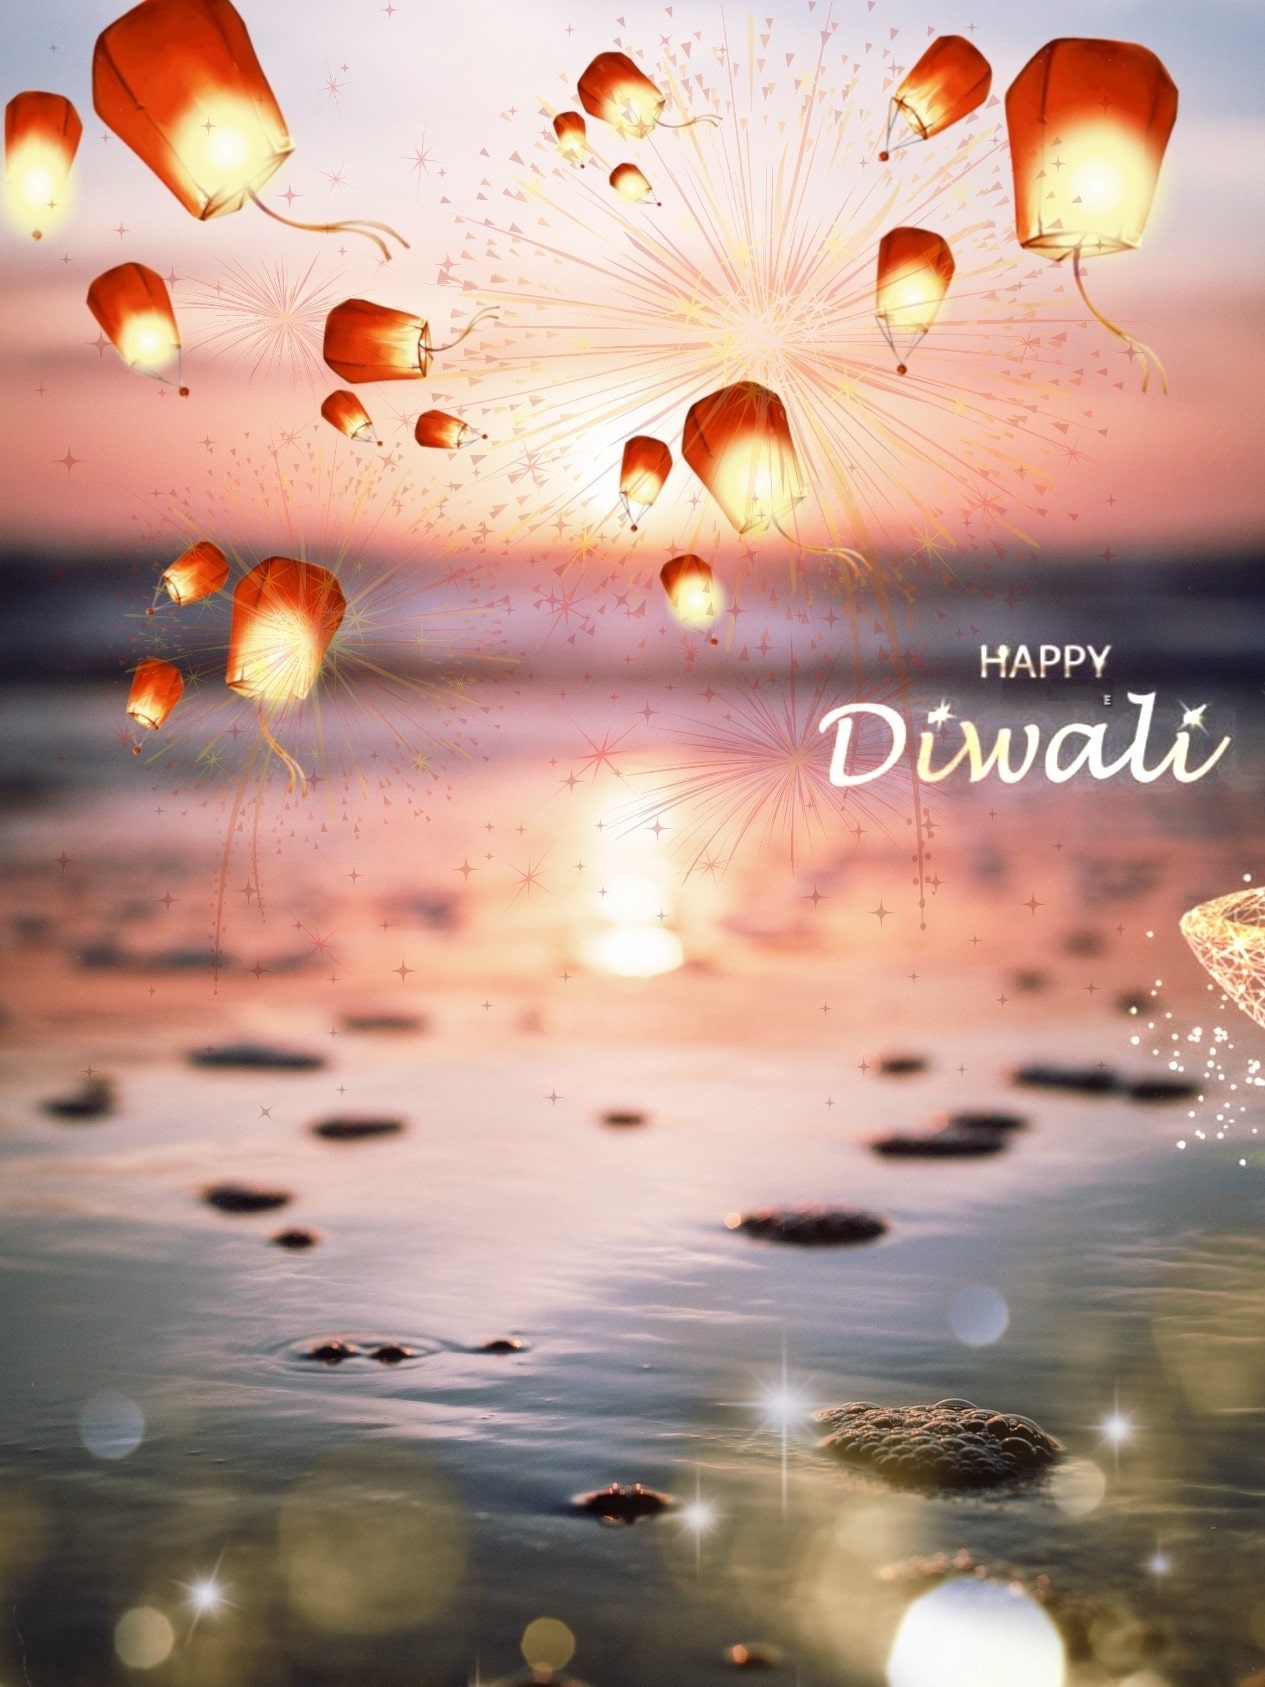 Diwali Background Image 